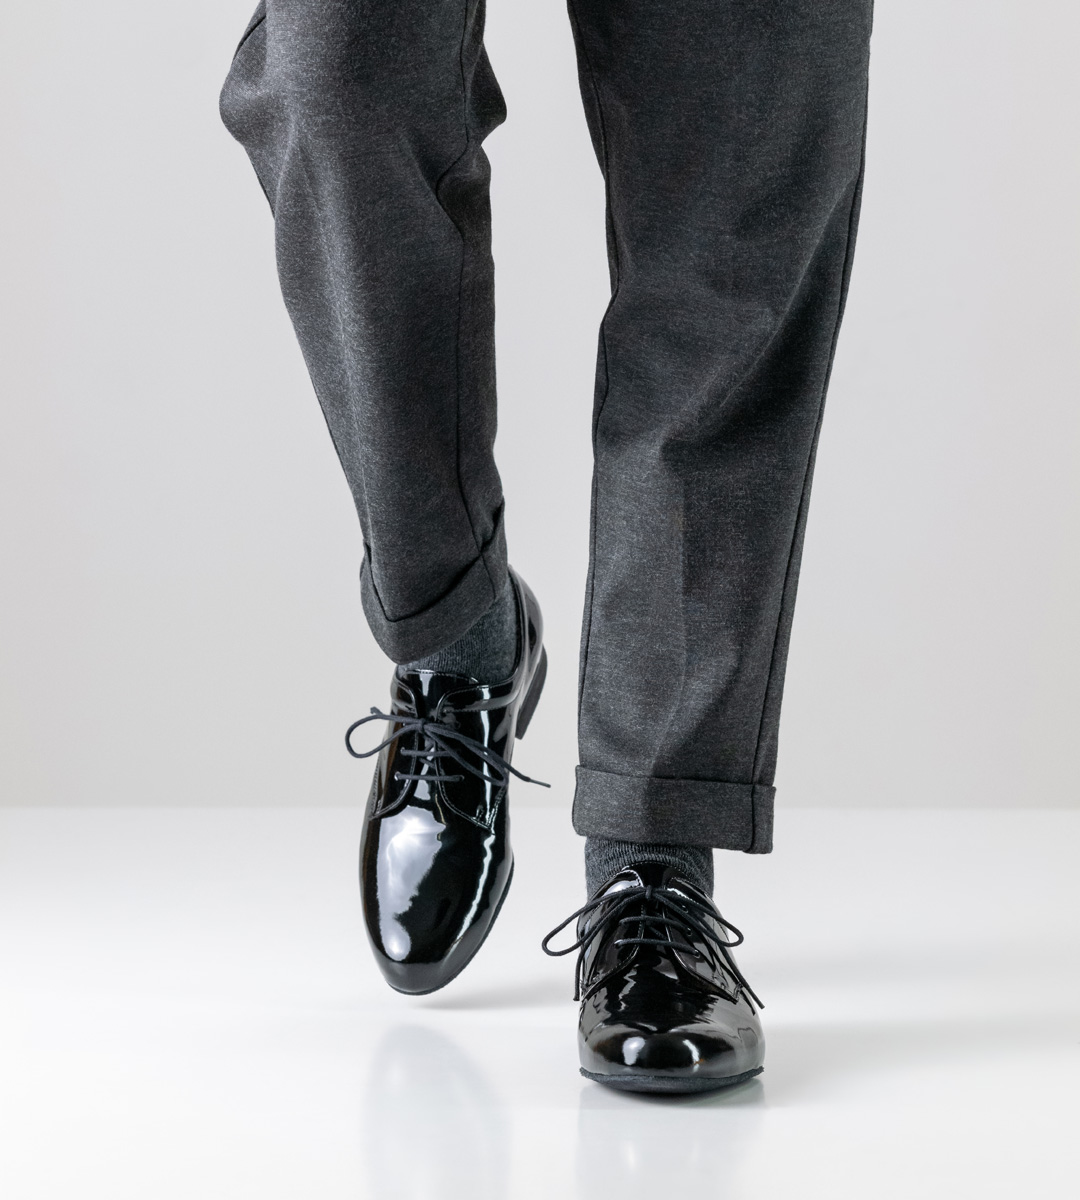 Lateintanzschuh für Herren mit 2 cm hohem Absatz in Kombination mit grauer Hose